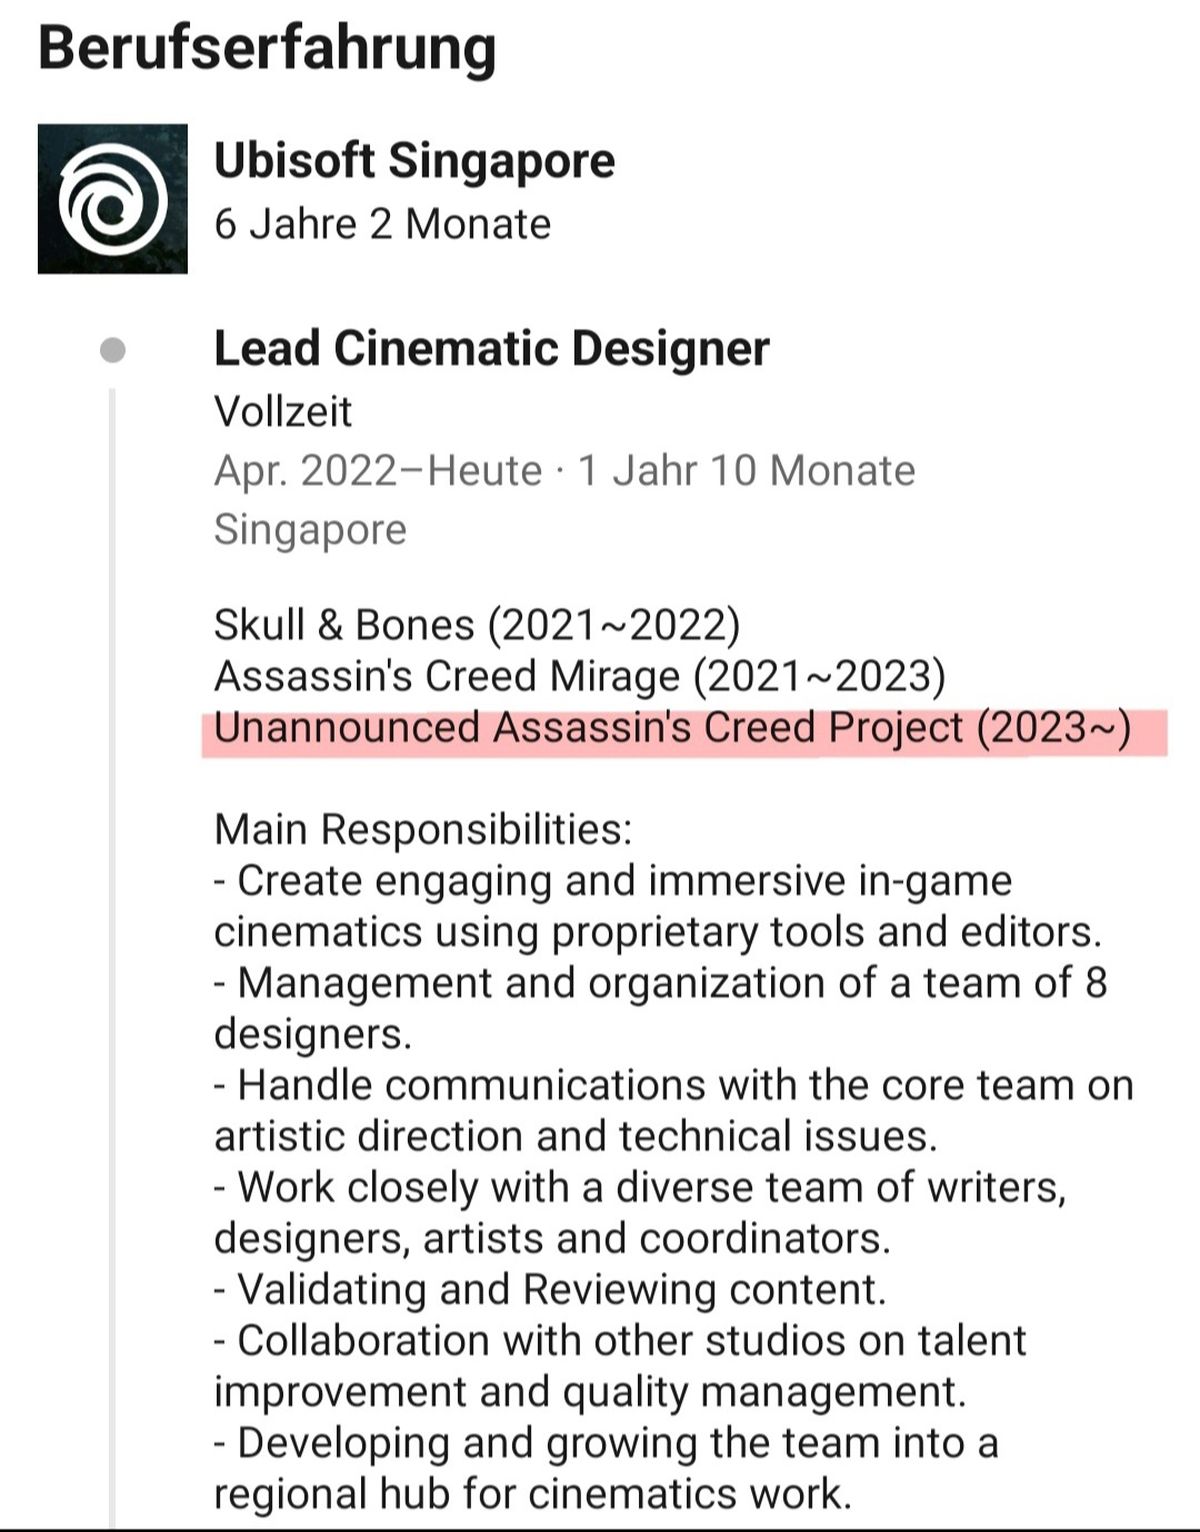 В профиле сотрудника Ubisoft нашли намёк на ремейк Assassins Creed 4 Black Flag - фото 1